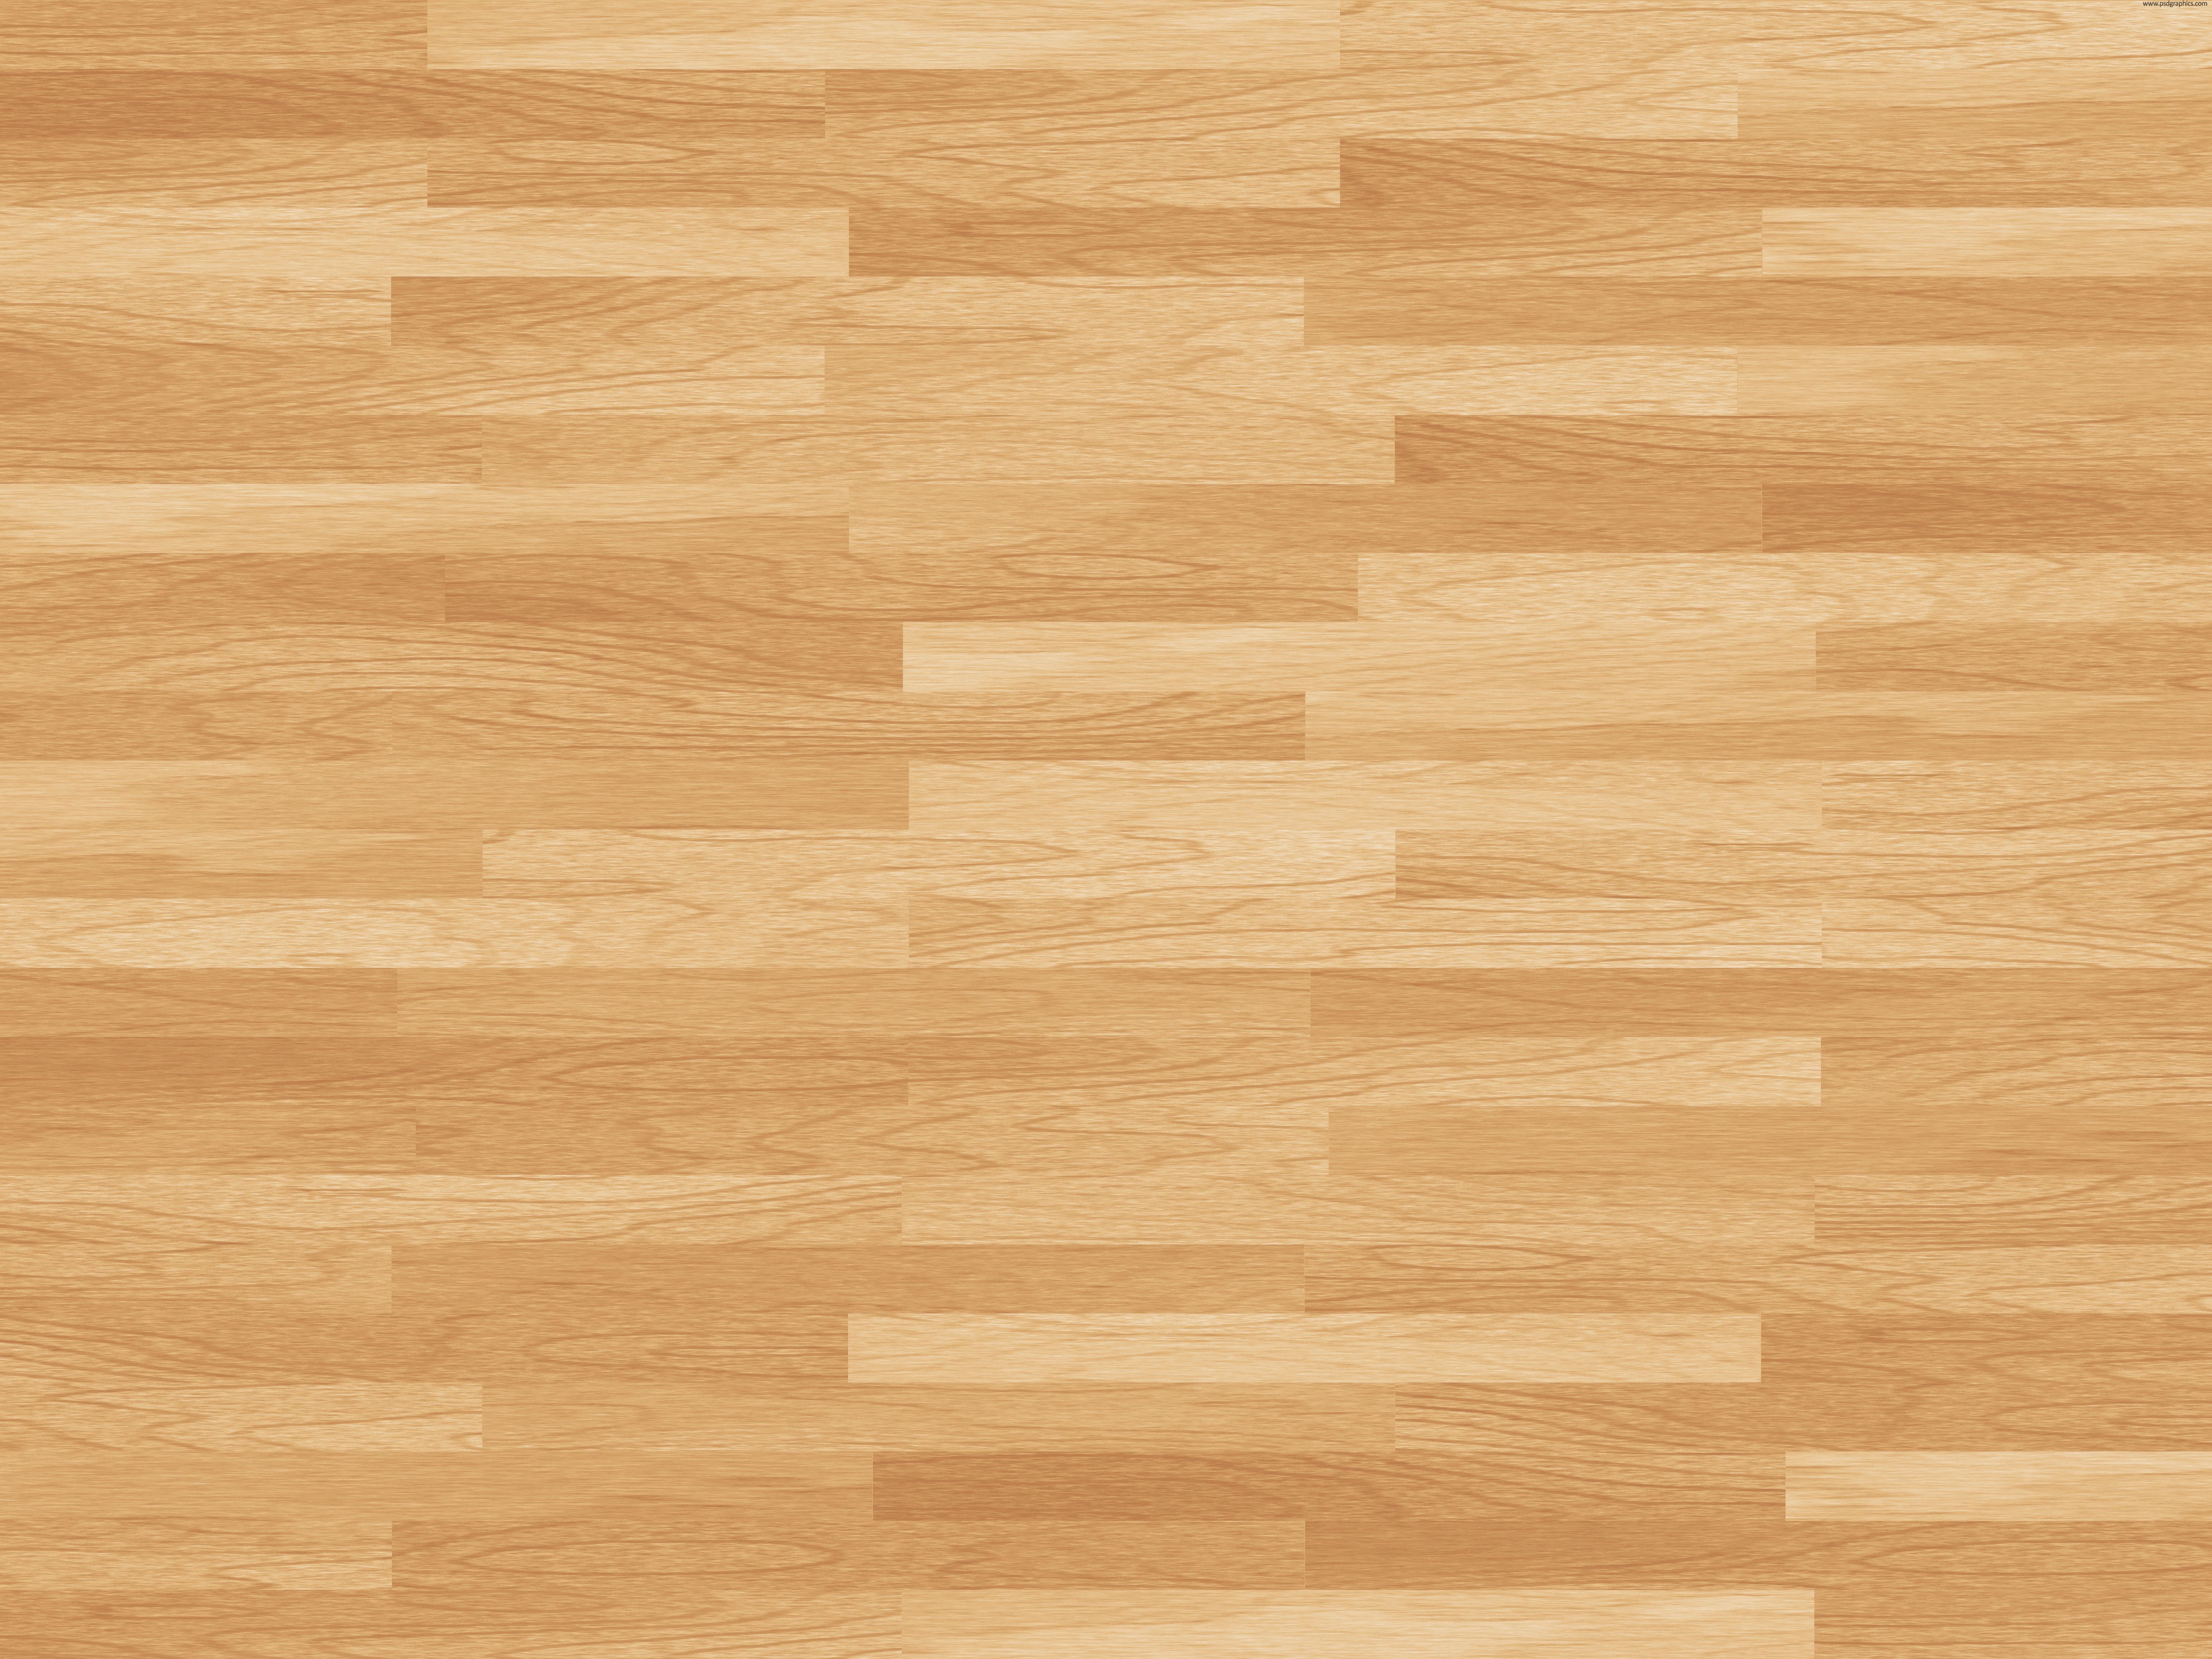 Most viewed Wooden Floor wallpaperK Wallpaper